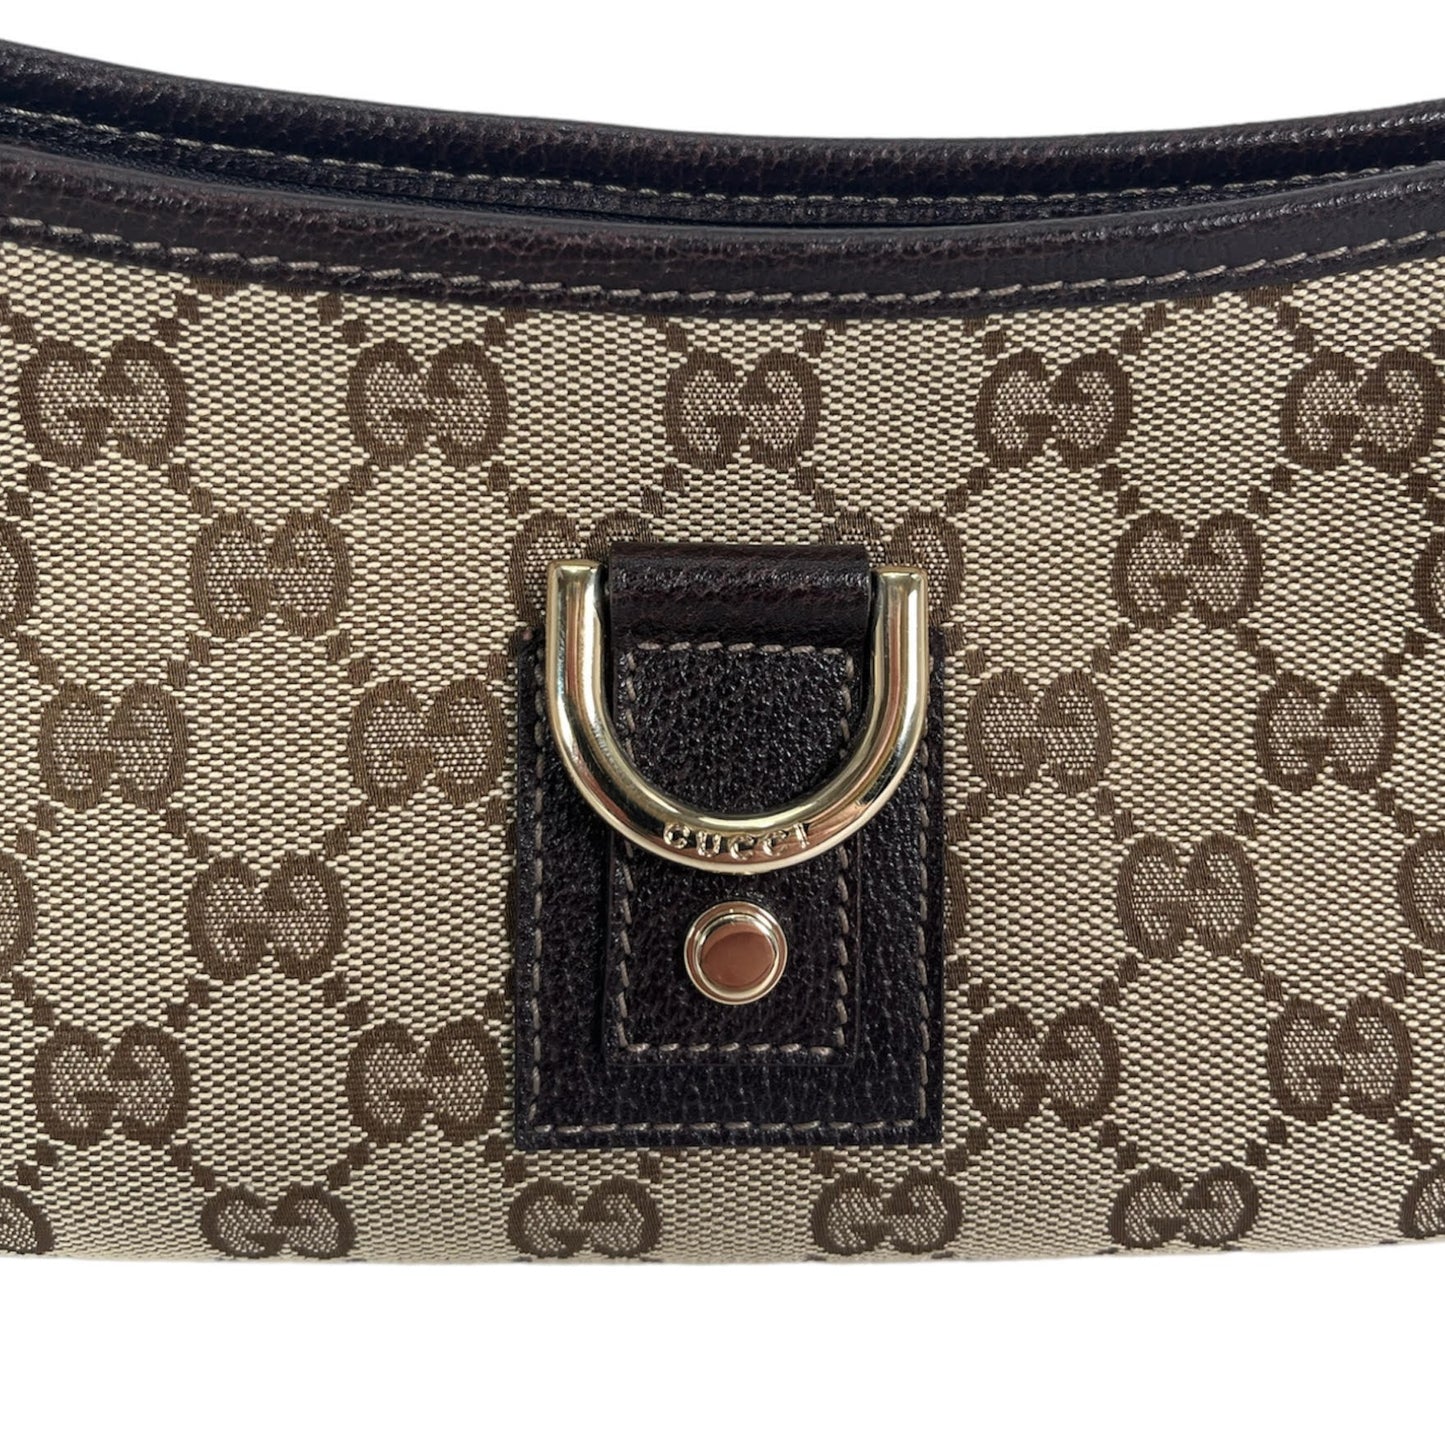 Gucci Guccissima Canvas D-Ring Abbey Baguette Bag